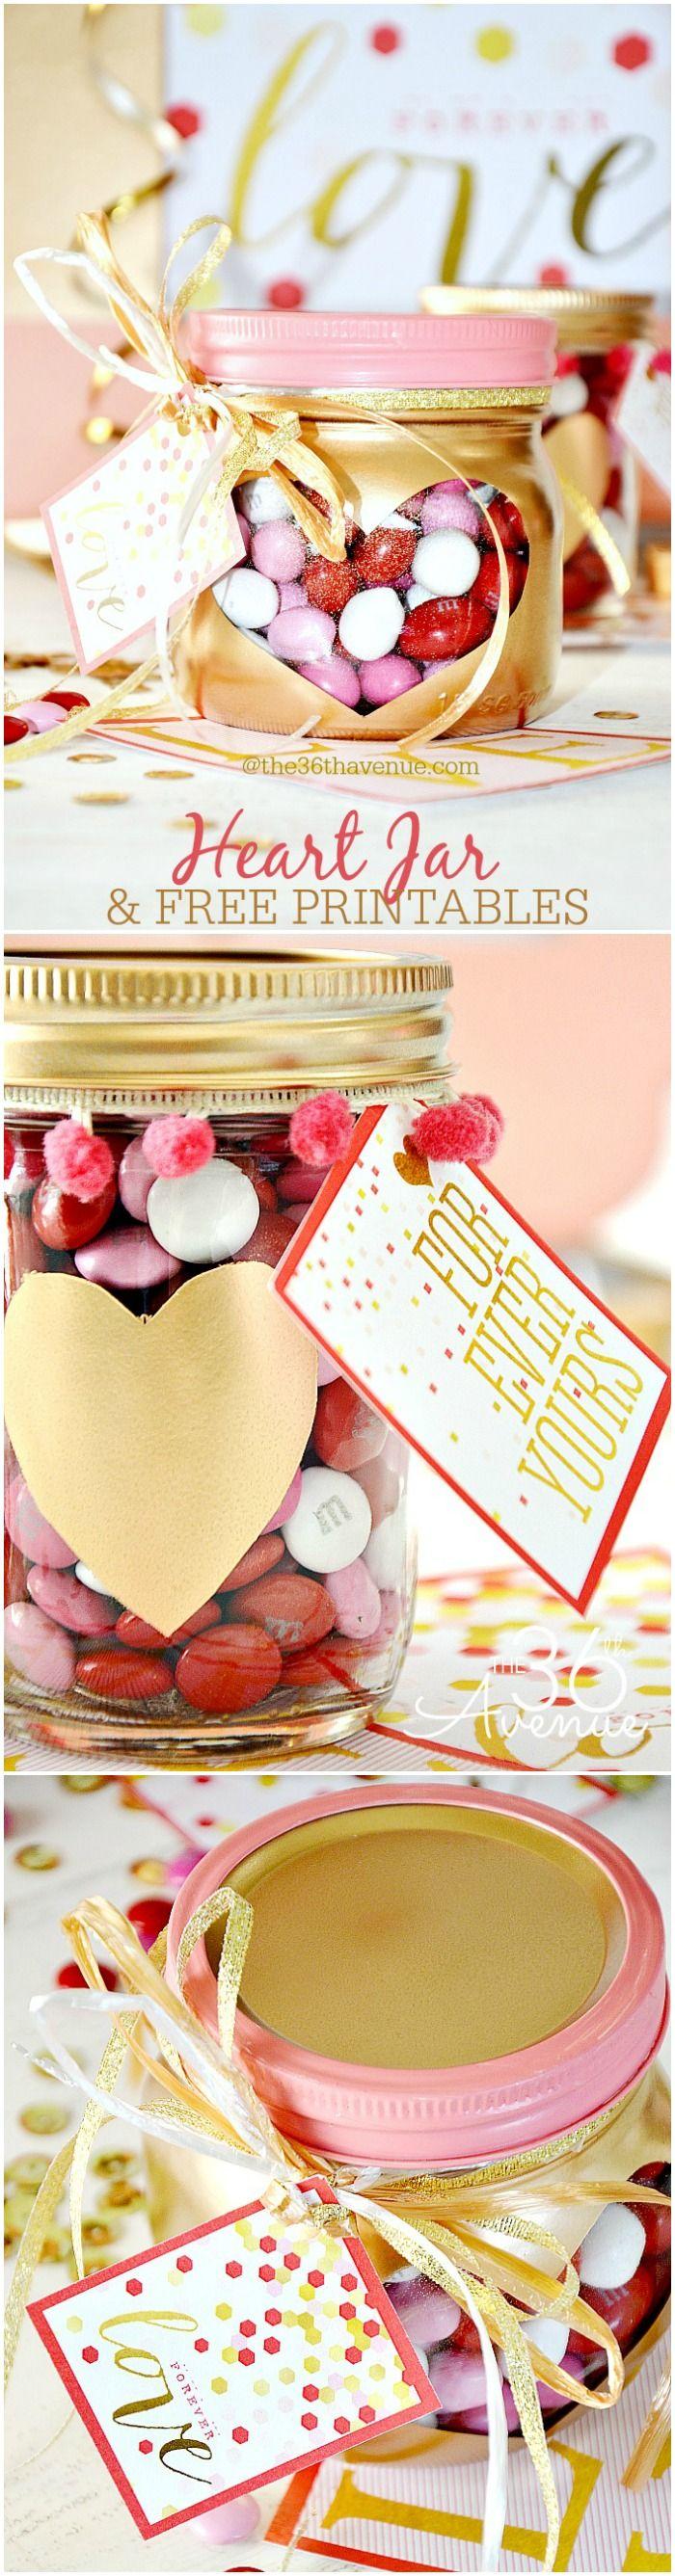 Wedding - Valentine's Day Gift - Heart Jars